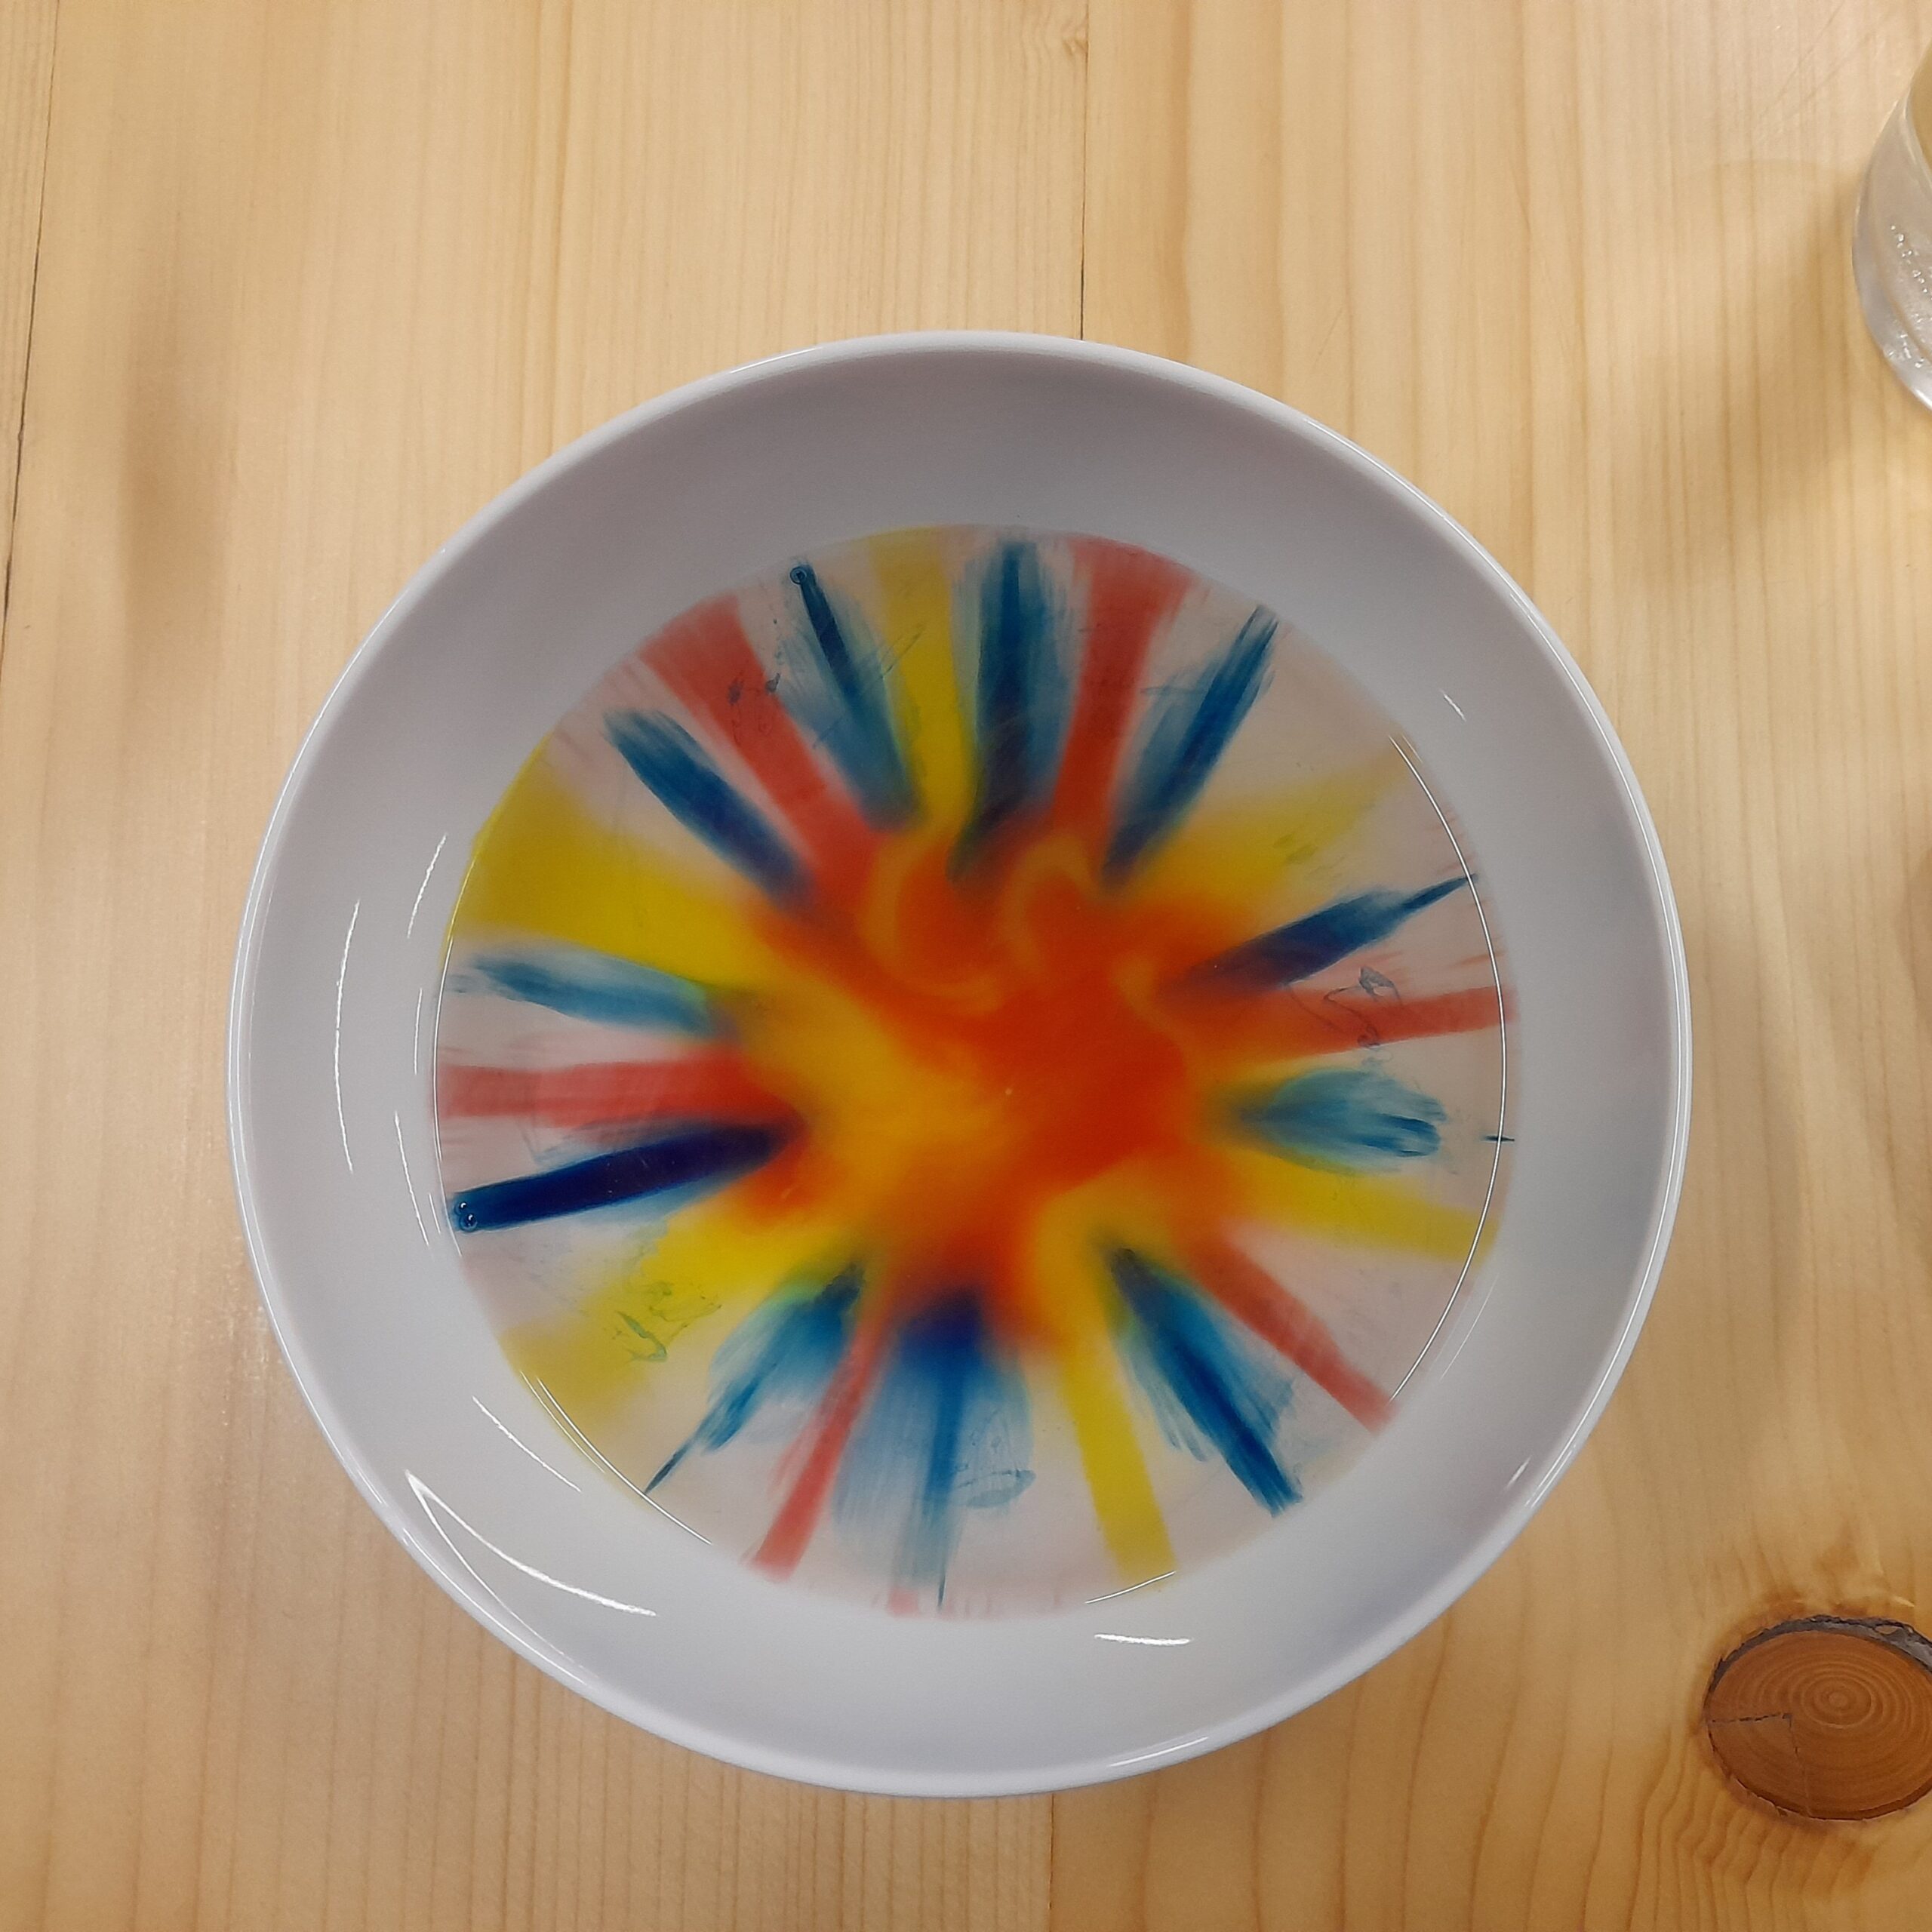 Zdjęcie przedstawia miskę wypełnioną kolorowymi płynami